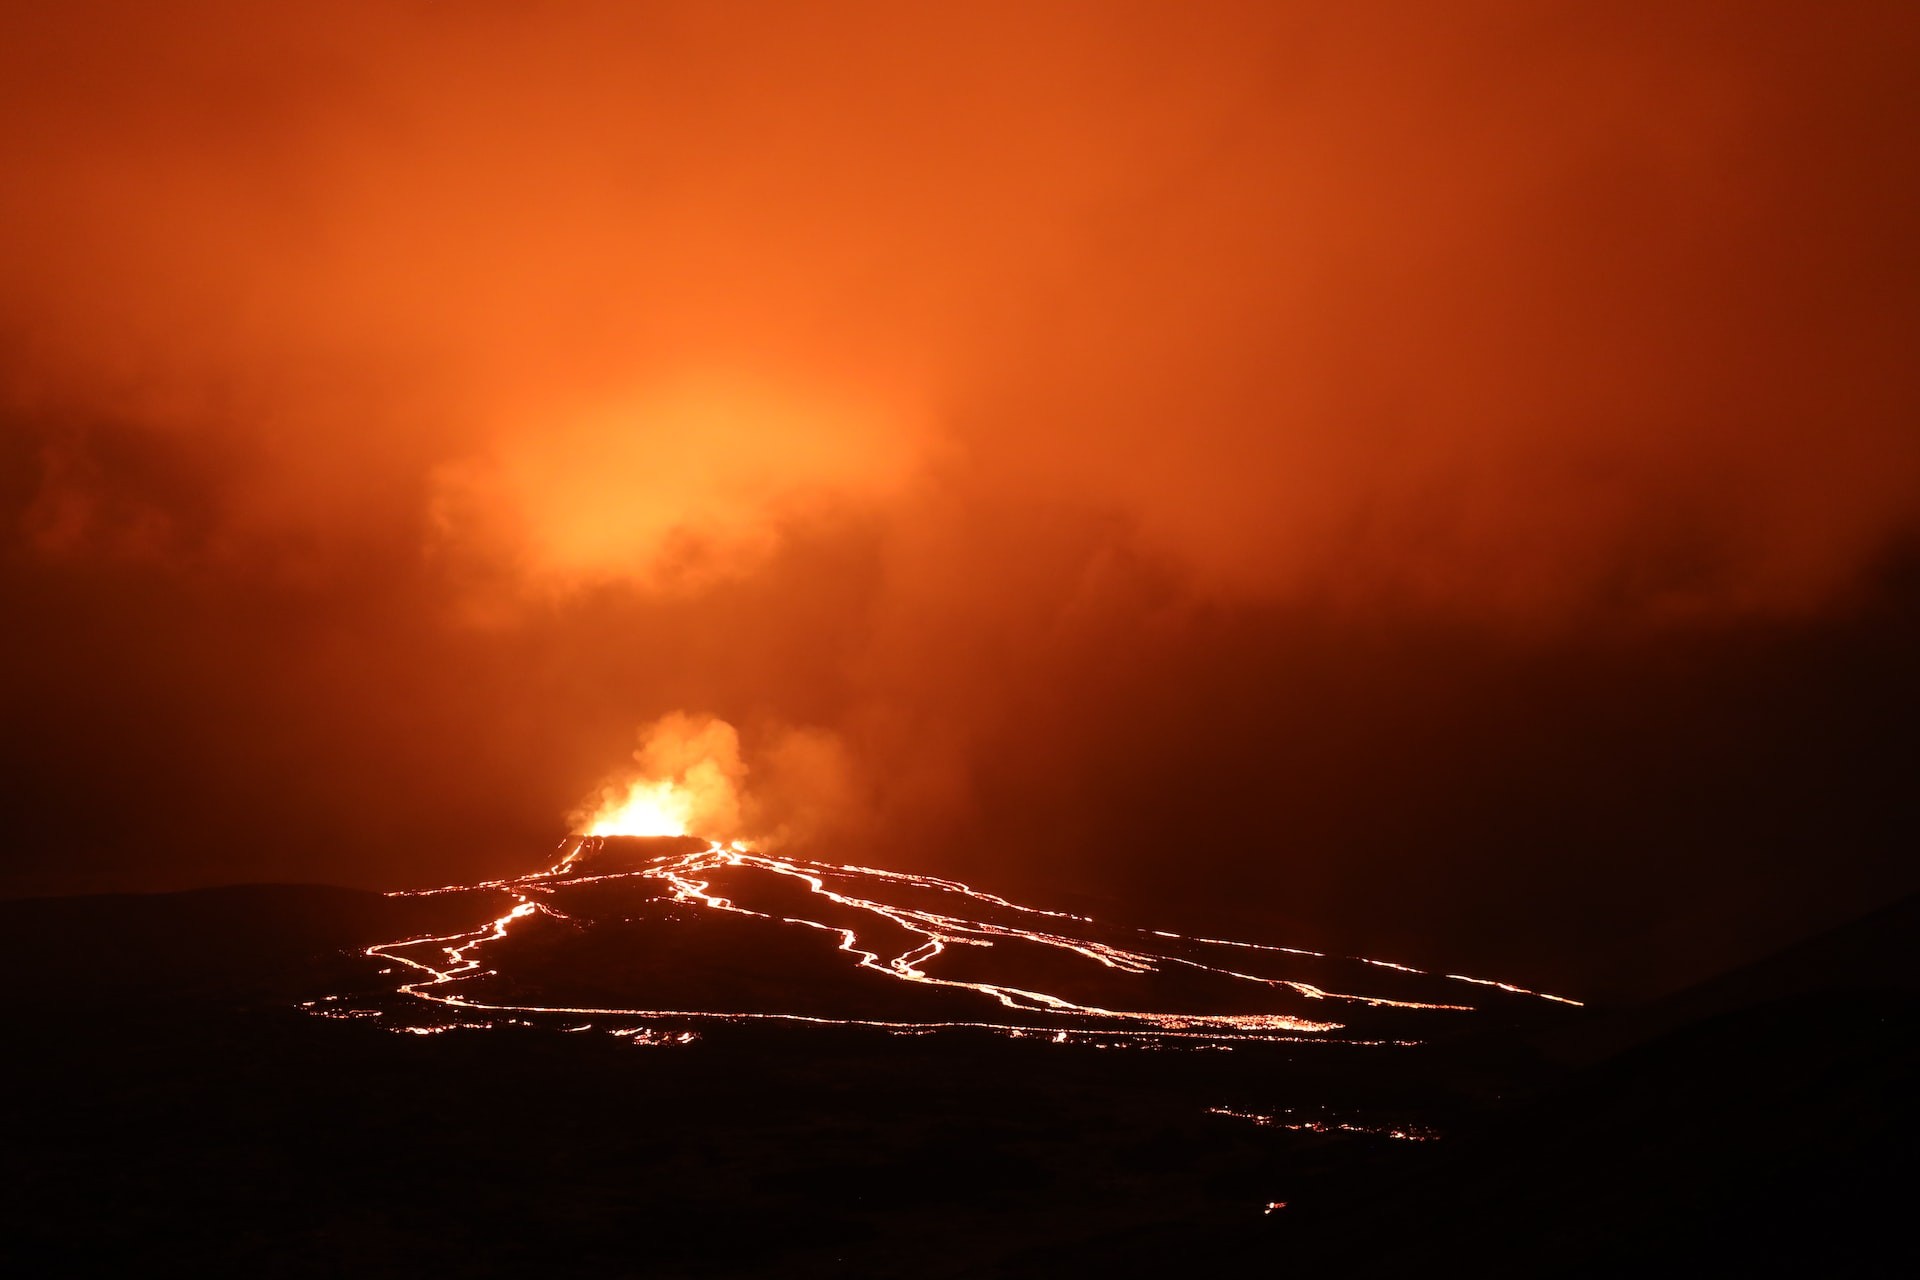 Erupções vulcânicas podem ser o principal fator de extinções em massa no planeta (Foto: Toby Elliott/Unsplash)